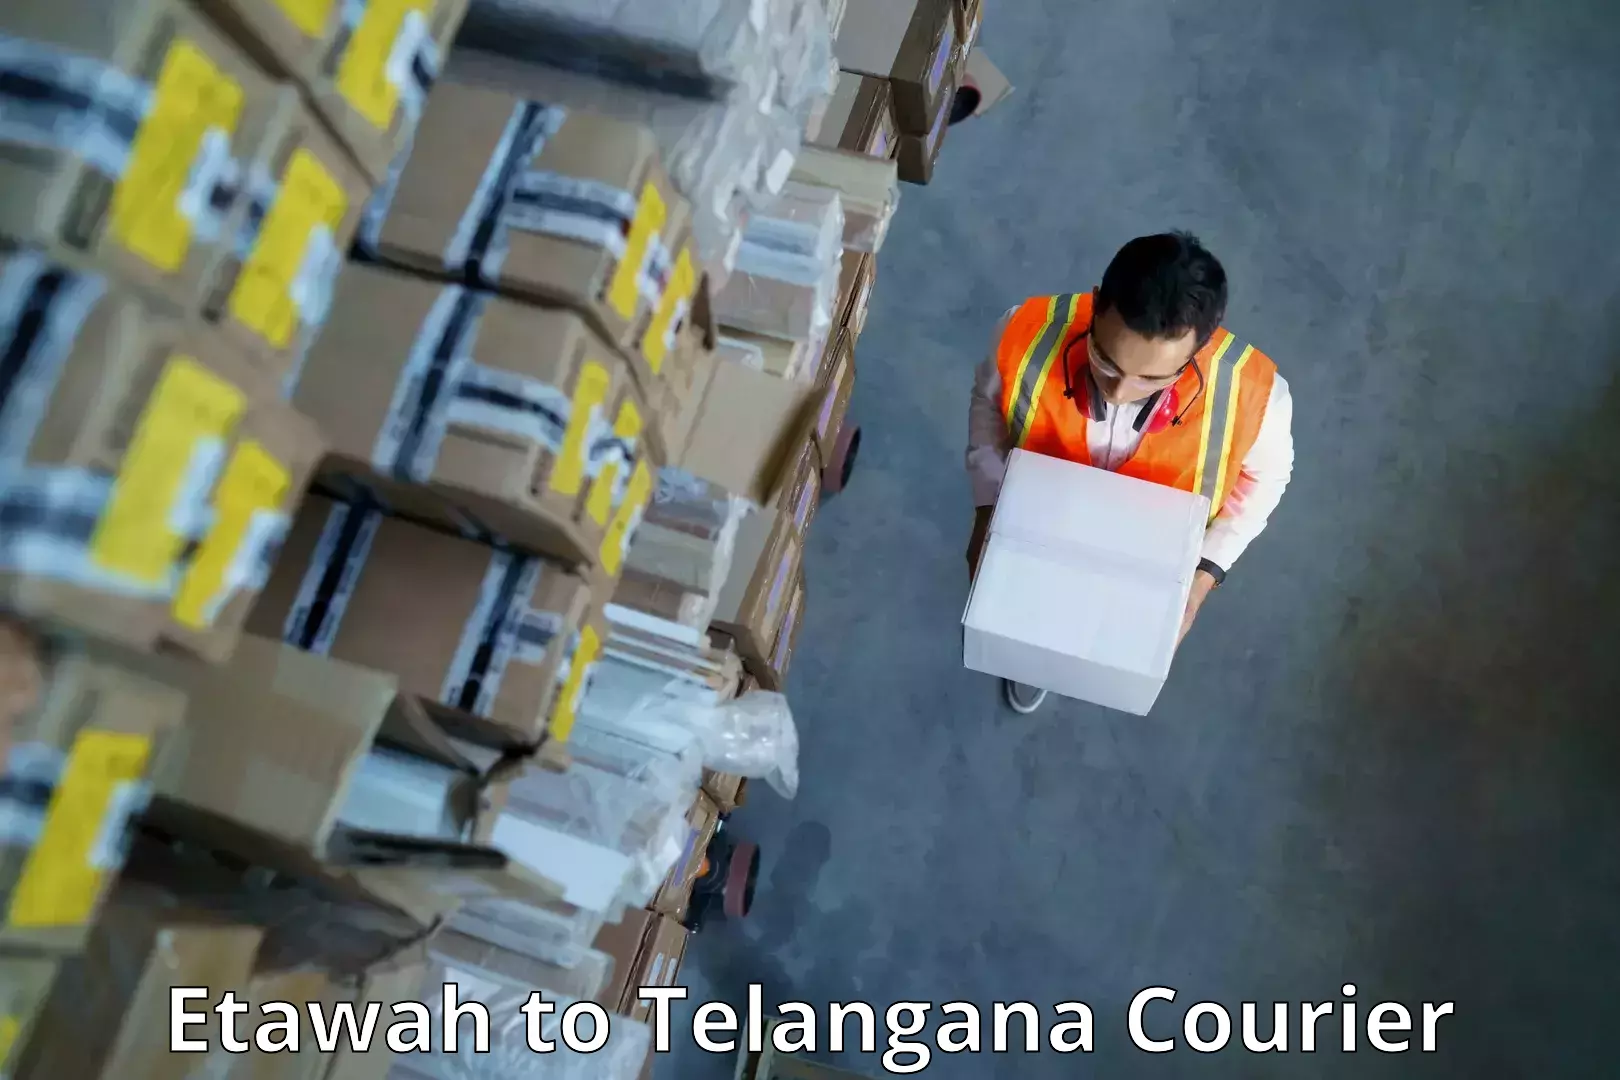 Reliable parcel services Etawah to Jogipet